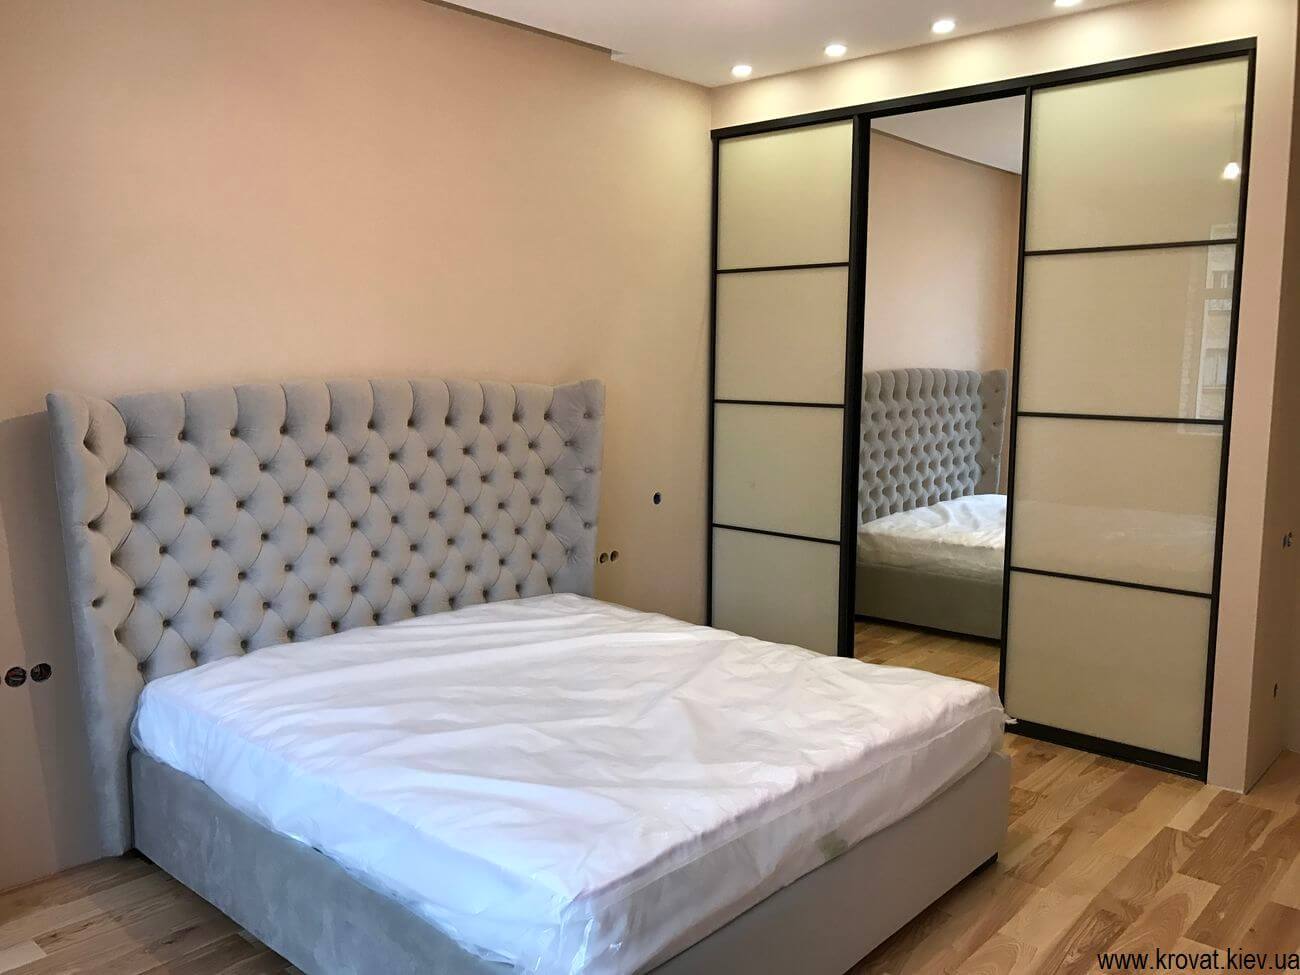 Шкаф для спальни оптимального размера и формы  – 6 рекомендаций по выбору